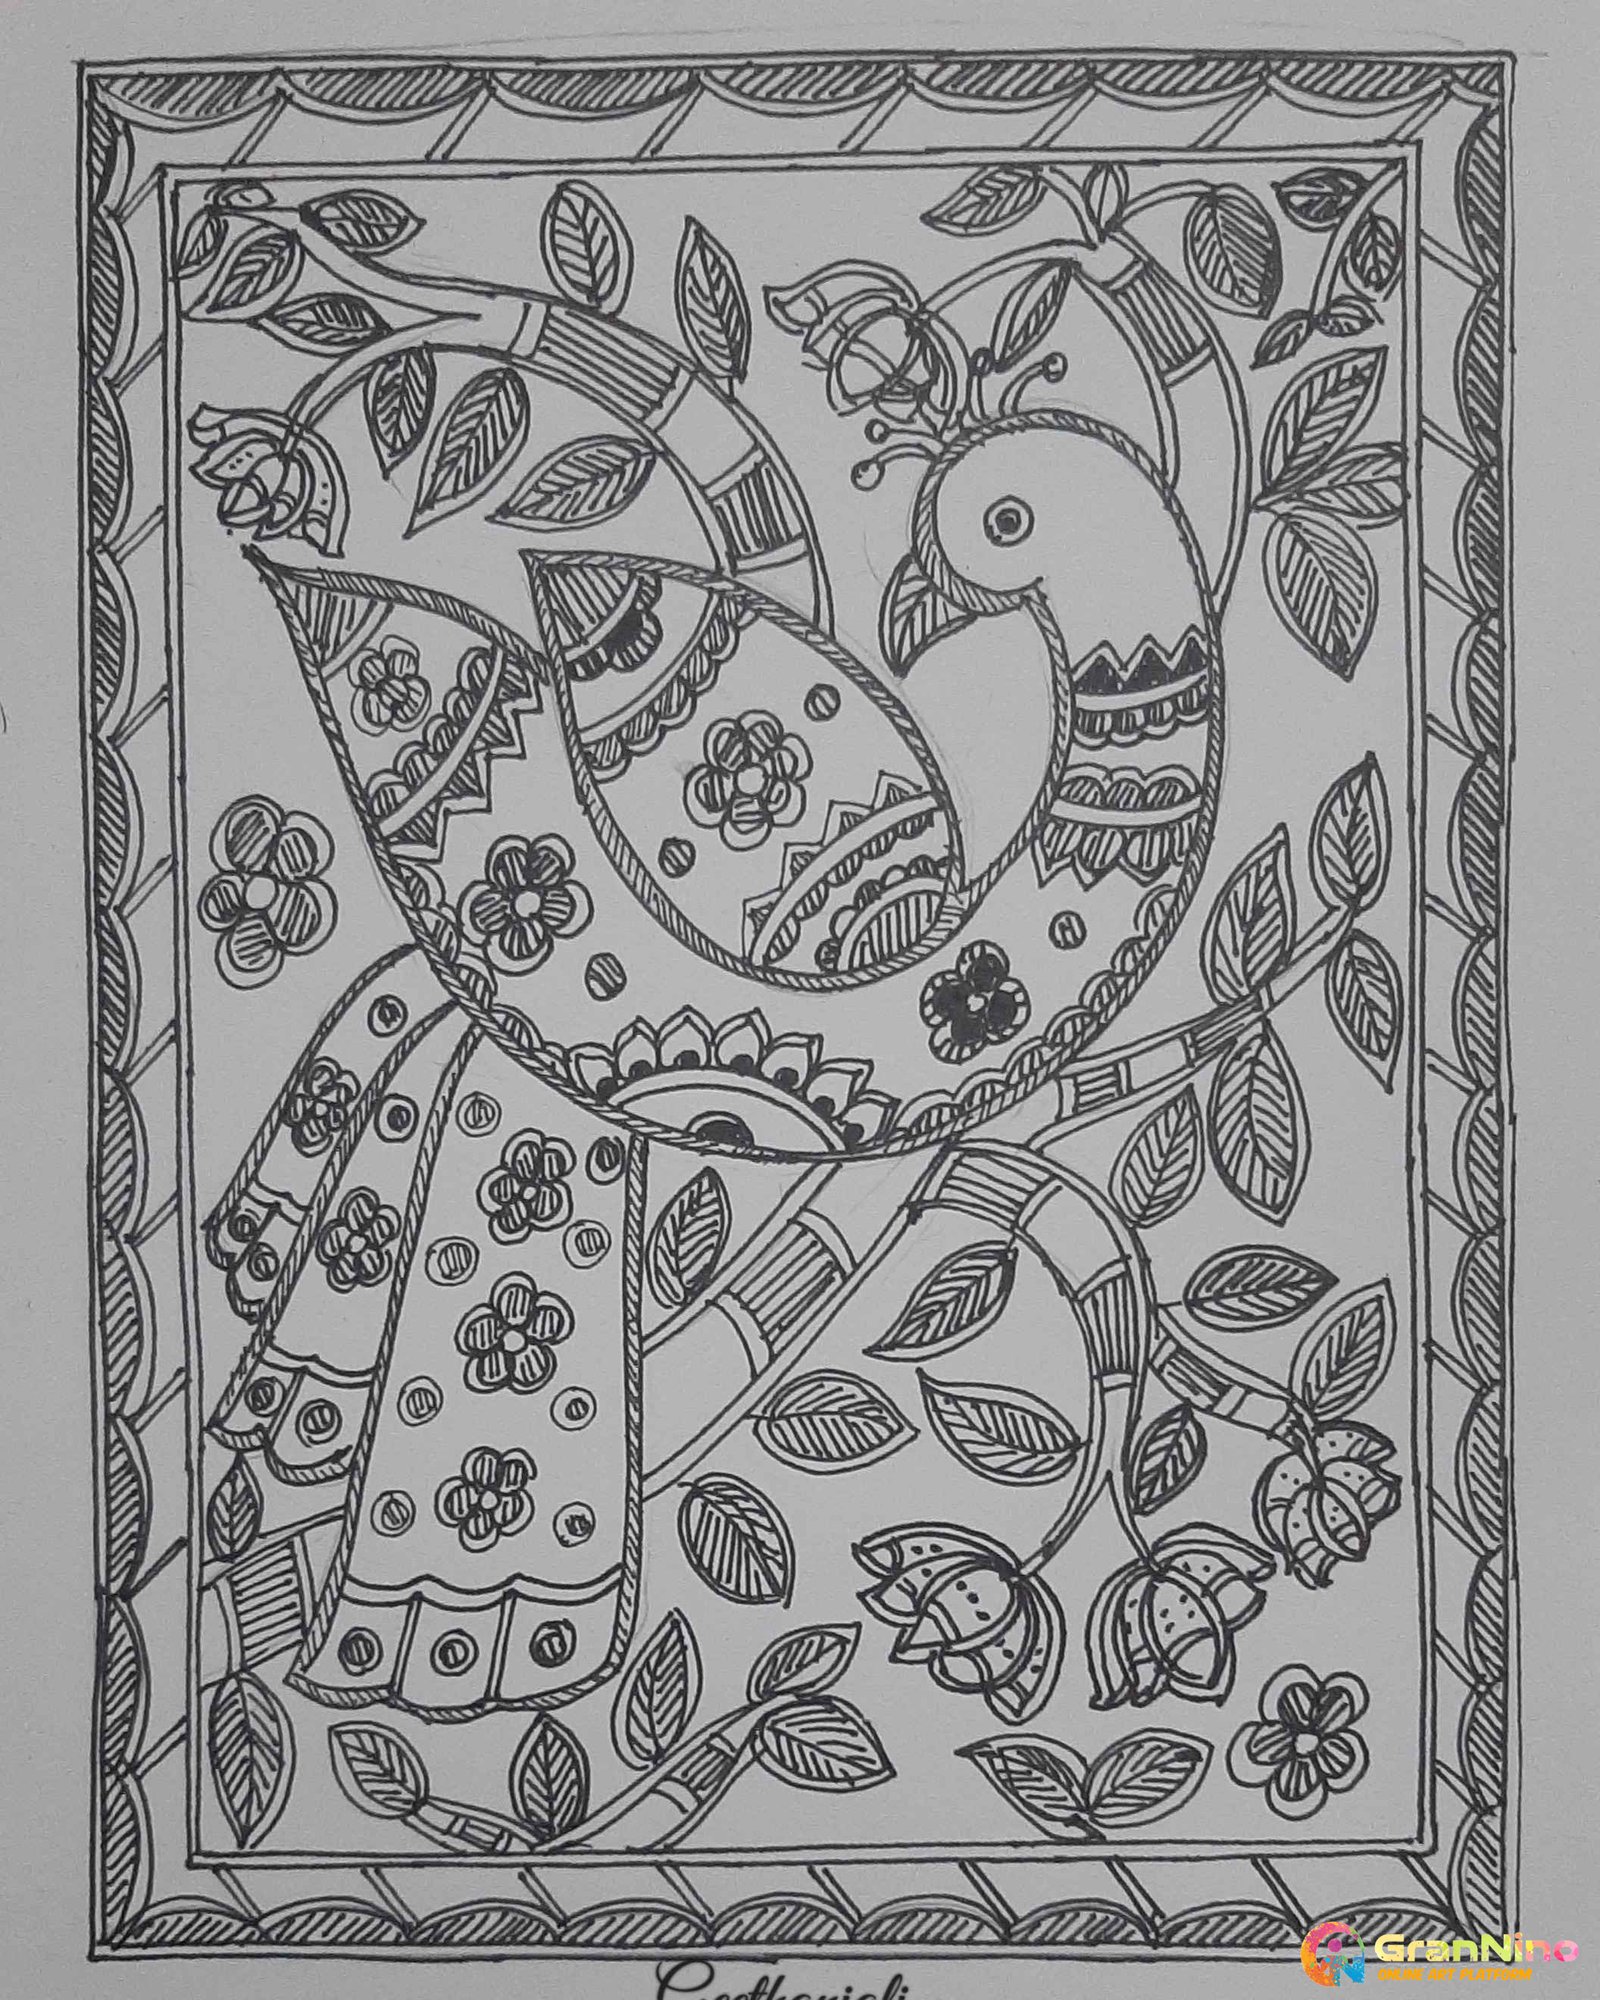 bepositive | Mandala design art, Doodle art designs, Madhubani paintings  peacock